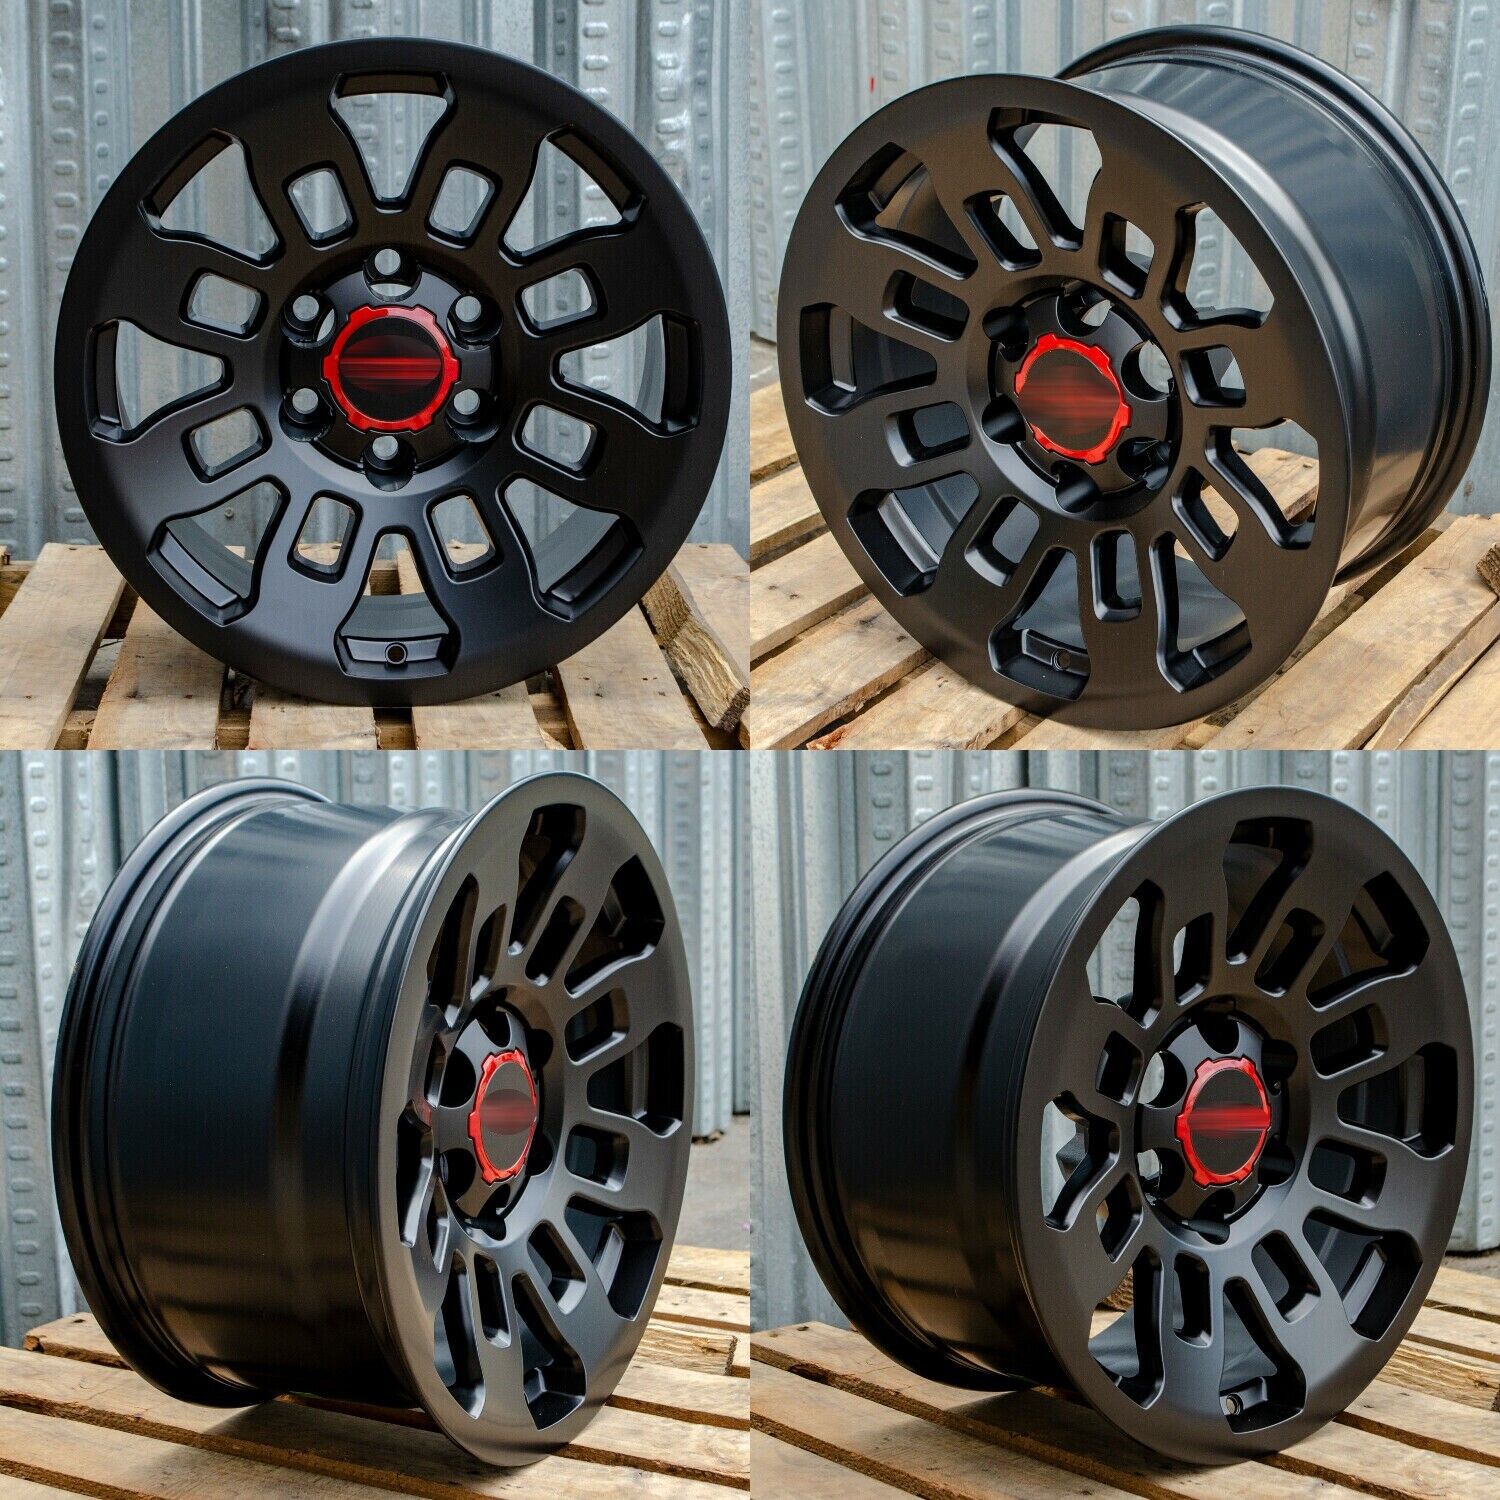 4 New Matt Black Rims Wheels 17x8 6x139.7 Fits Toyota Tacoma 4Runner FJ Cruiser